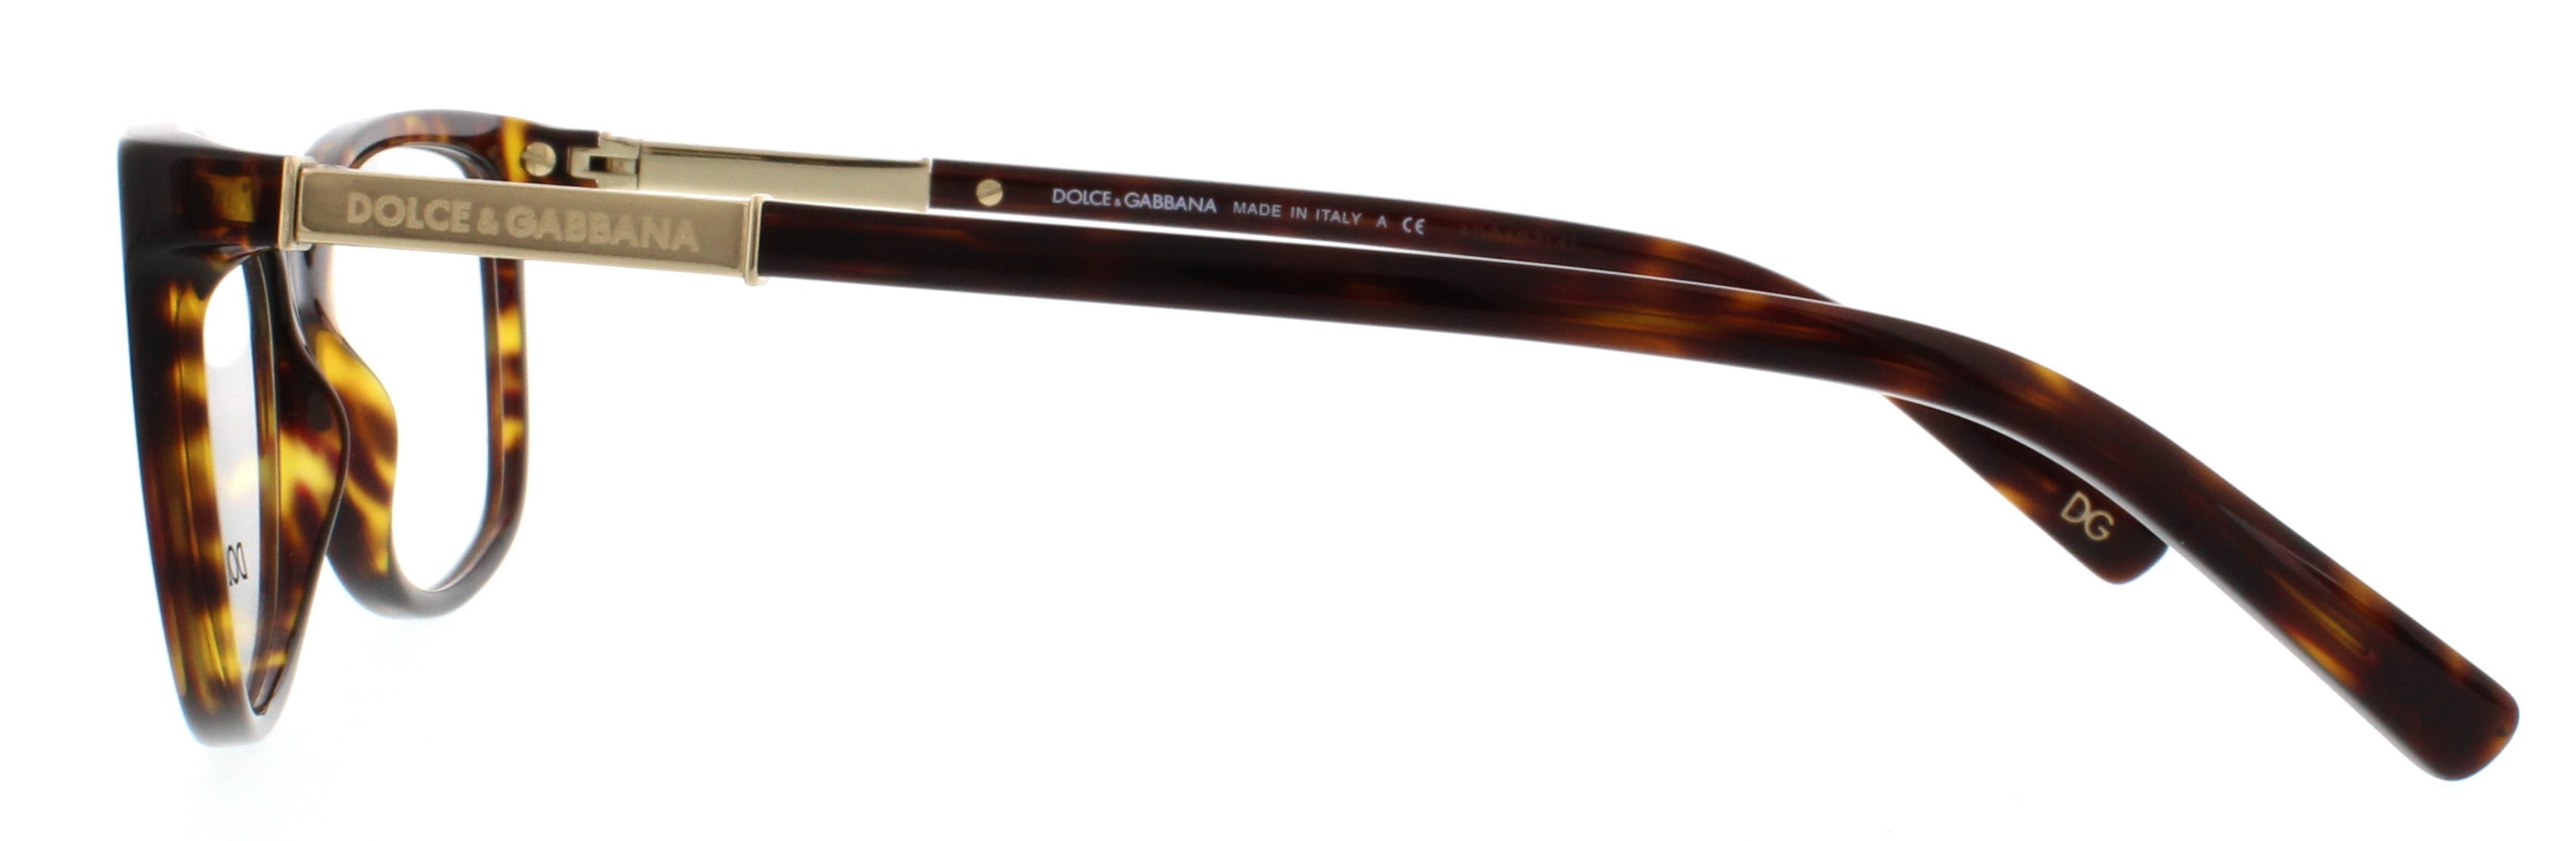 Dolce & Gabbana DG3107 Eyeglasses-502 Havana-52mm